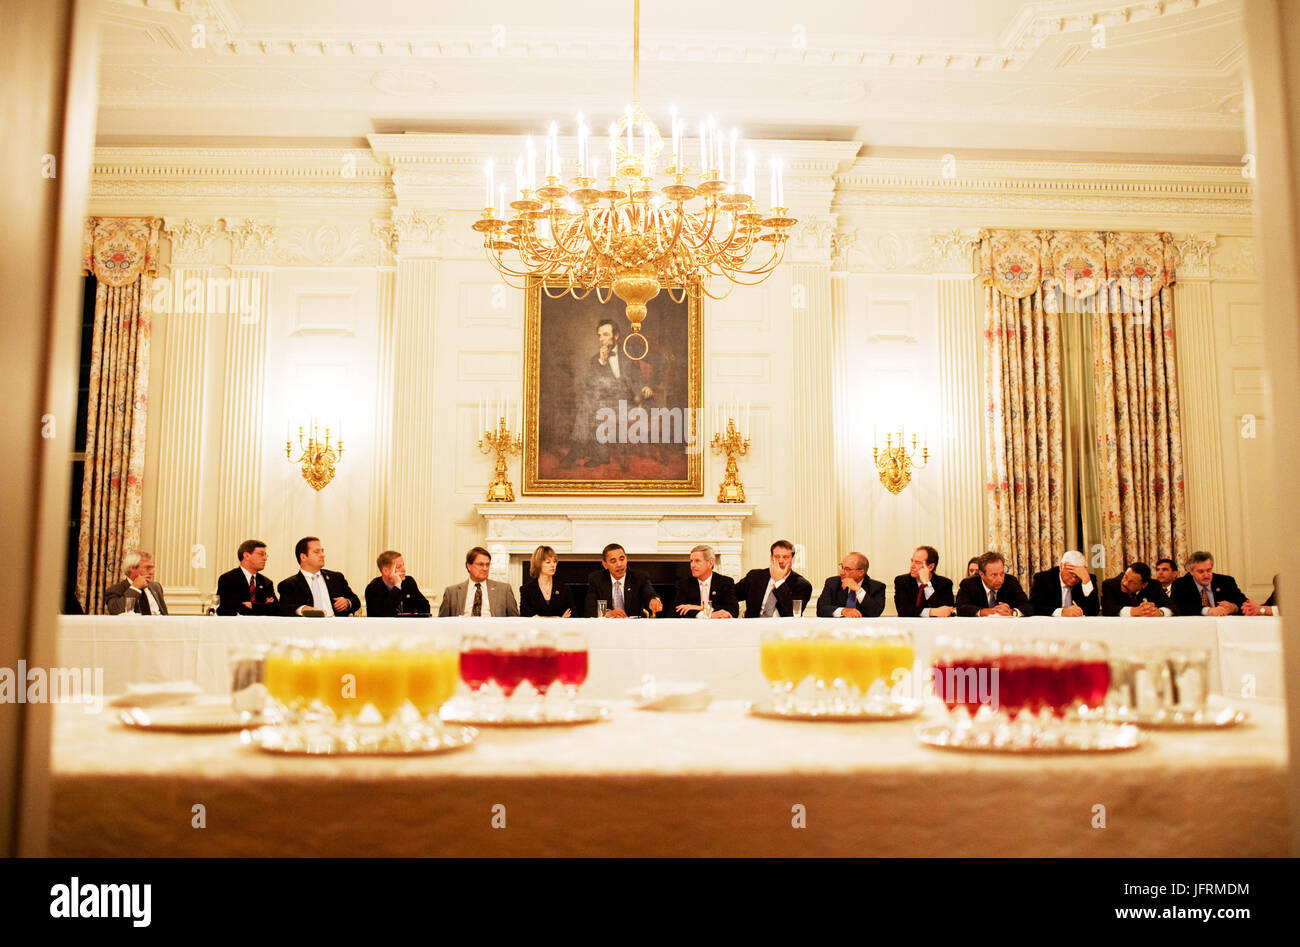 Le président Barack Obama se réunit avec la Blue Dog Coalition dans la salle à manger d'état de la Maison Blanche 2/10/09. Photo Officiel de la Maison Blanche par Pete Souza Banque D'Images